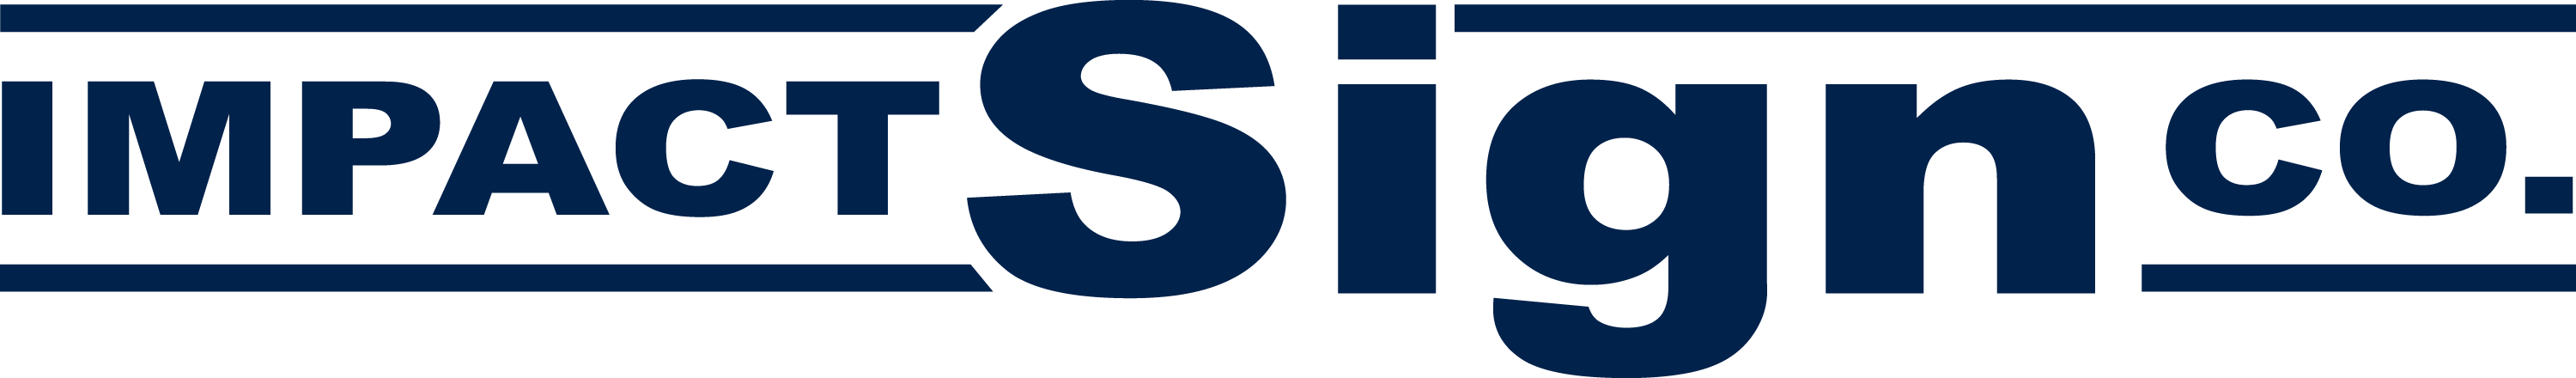 impact sign logo